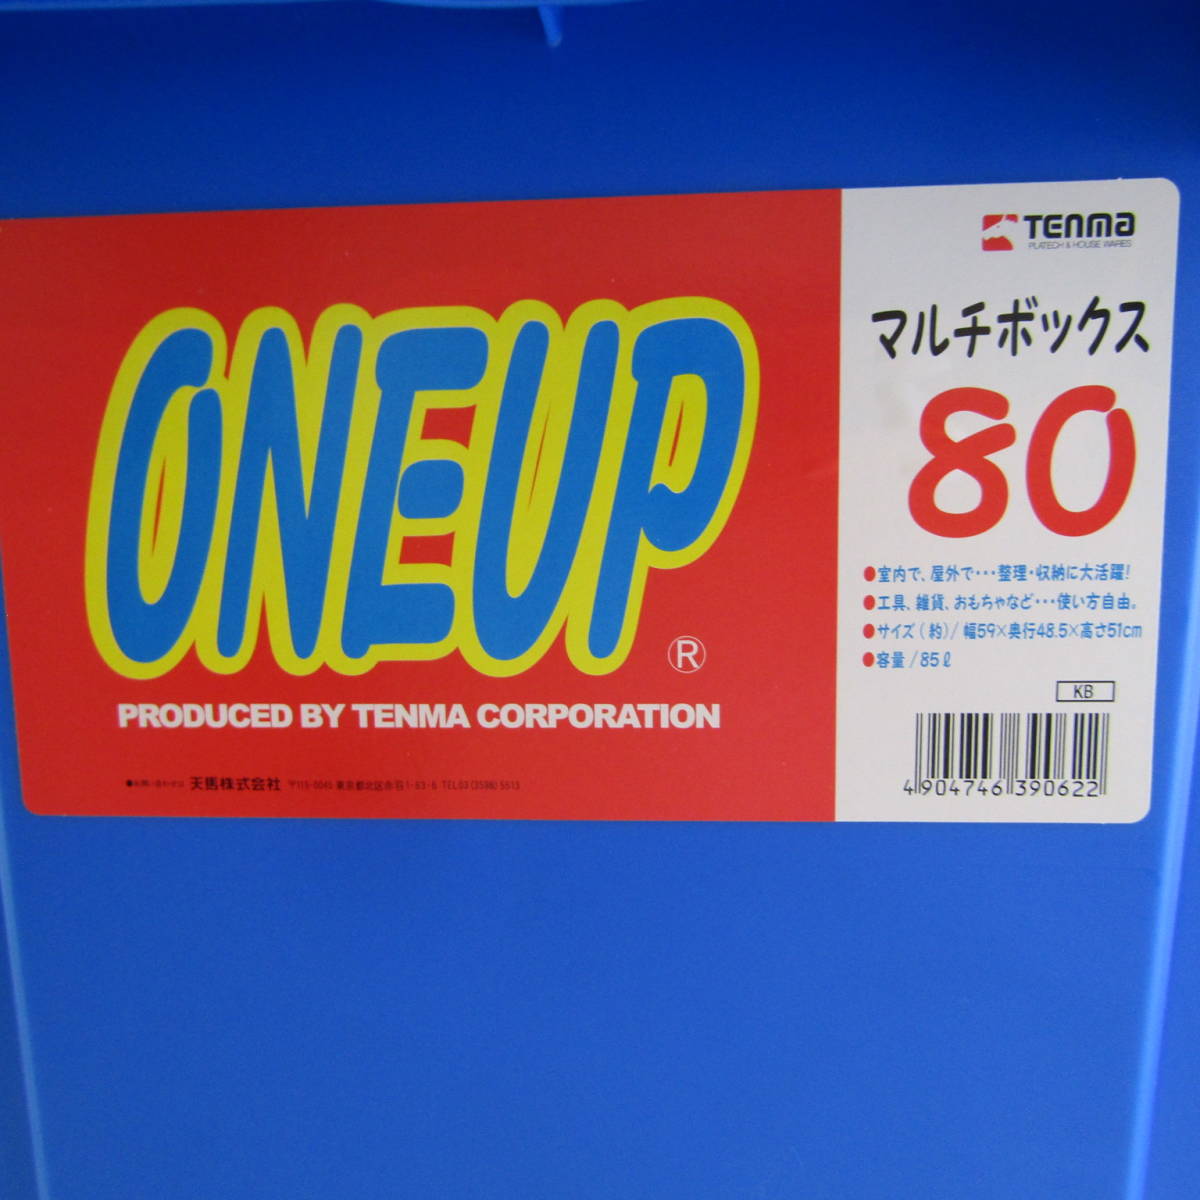 QB5332 tenma ONE-UP マルチボックス 80 箱 収納箱 道具箱 ブルー 室内 屋外 工具 雑貨 おもちゃ 整理 収納 85 中古 リサイクル 福井_画像5